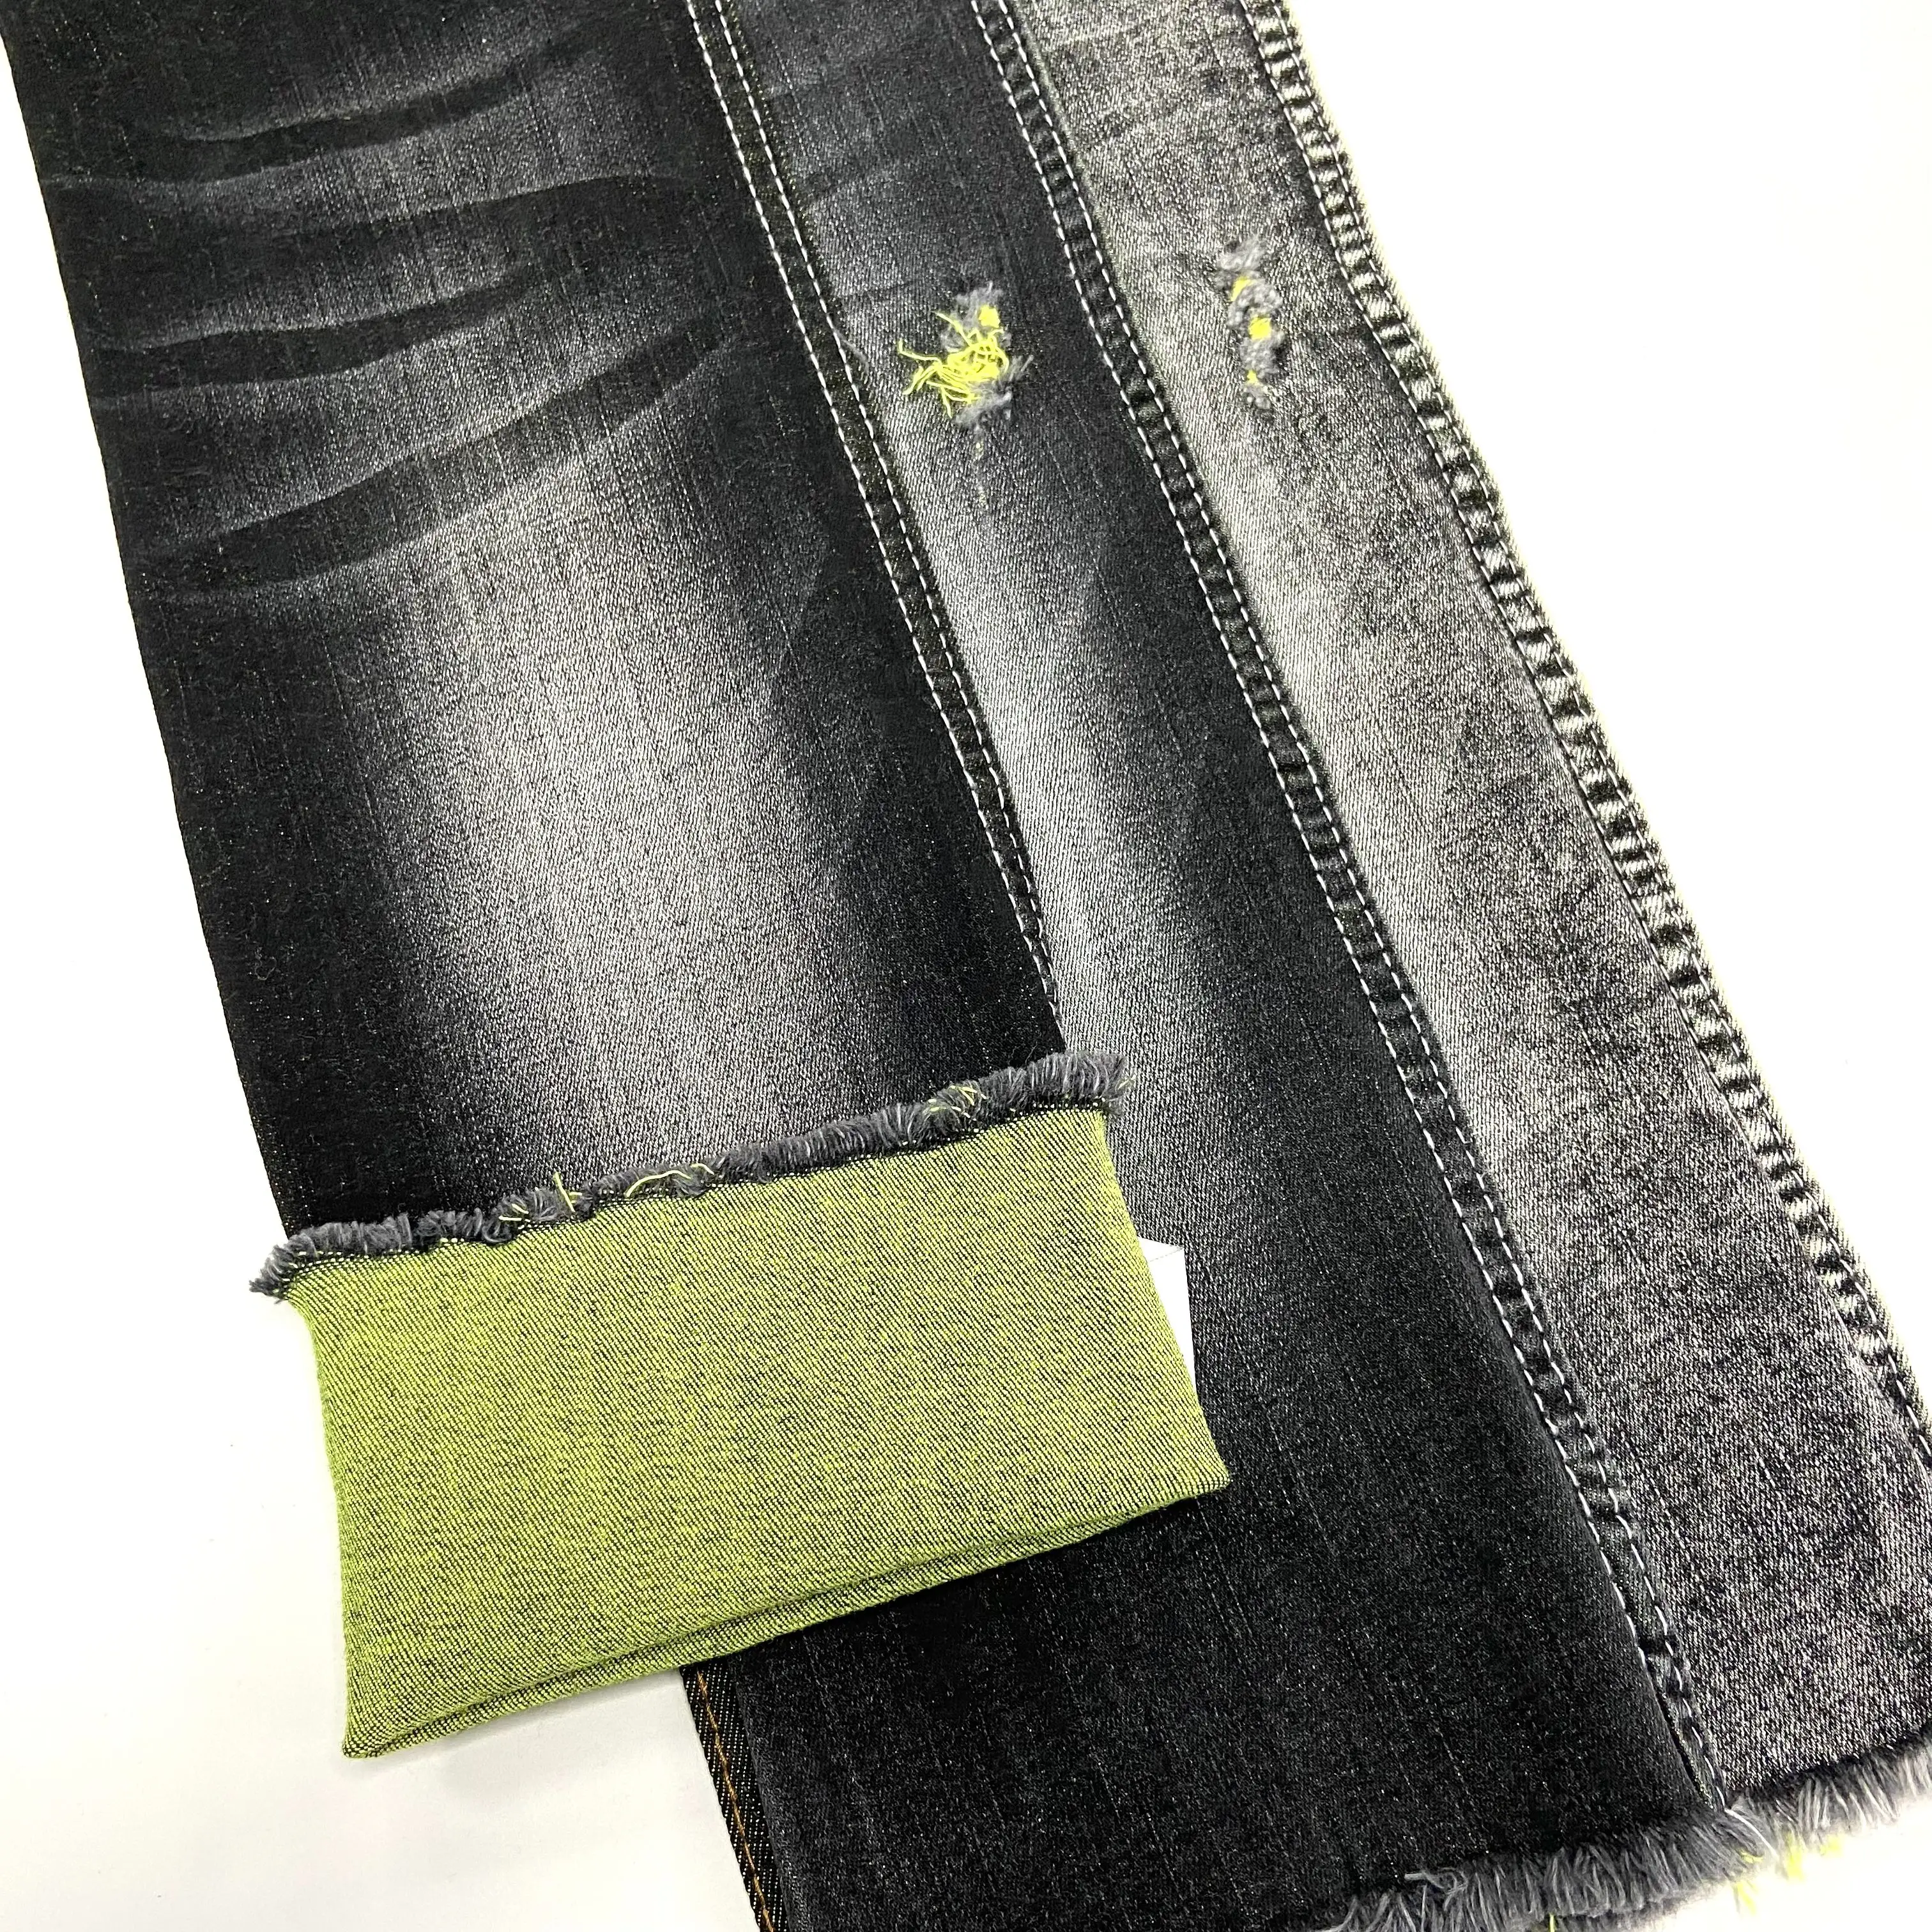 4-Wege-Stretch Dualfx Denim Stoff Textil Rohmaterial 9 Unzen Baumwolle Spandex Denim Jeans Stoff Twill Denim Stoff für Männer Jeans